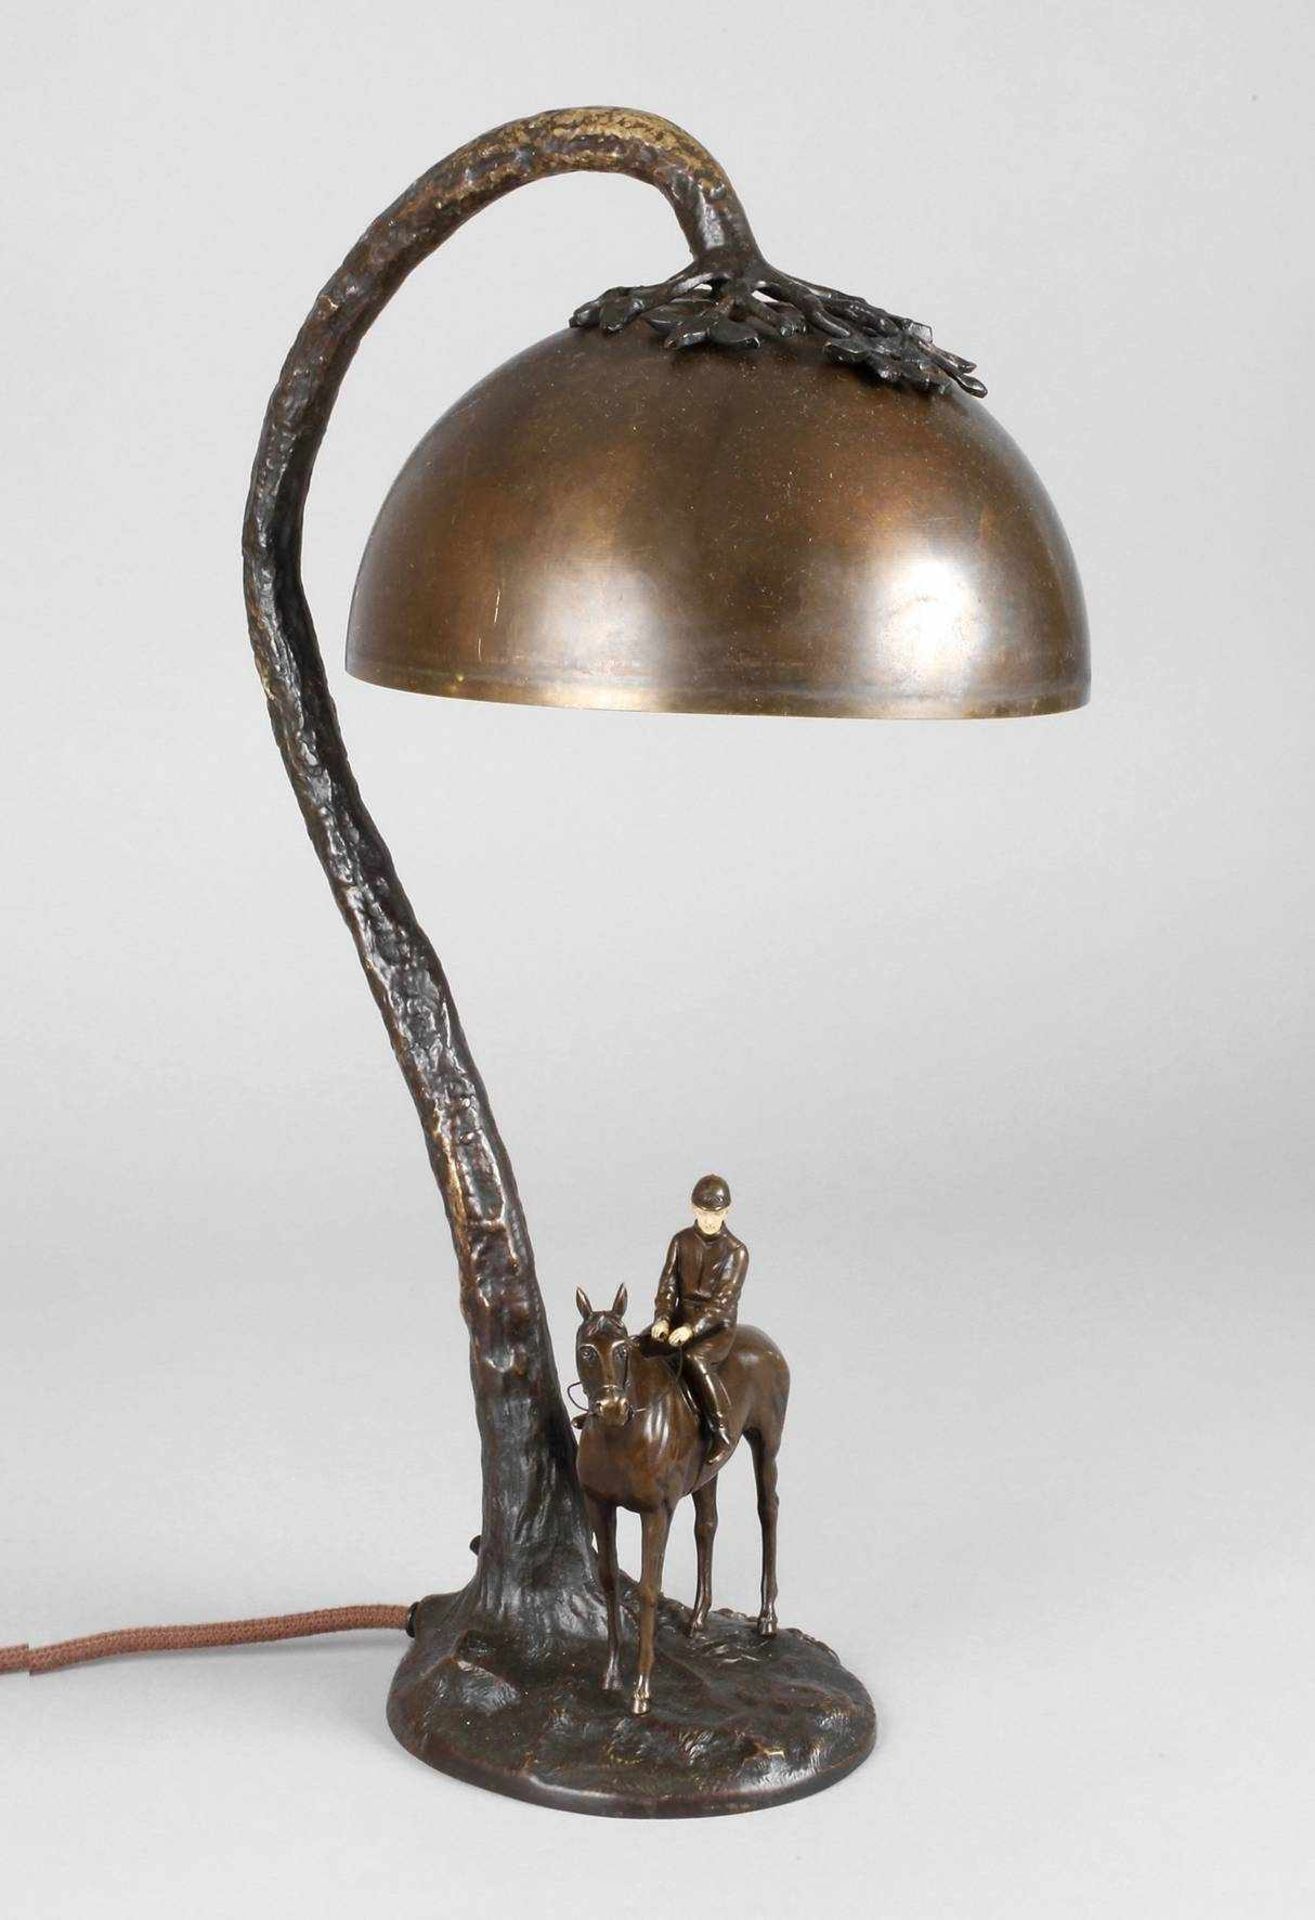 Tischlampe Victor Heinrich Seifertdeutsch, um 1900, seitlich signiert, Bronze mehrteilig gegossen